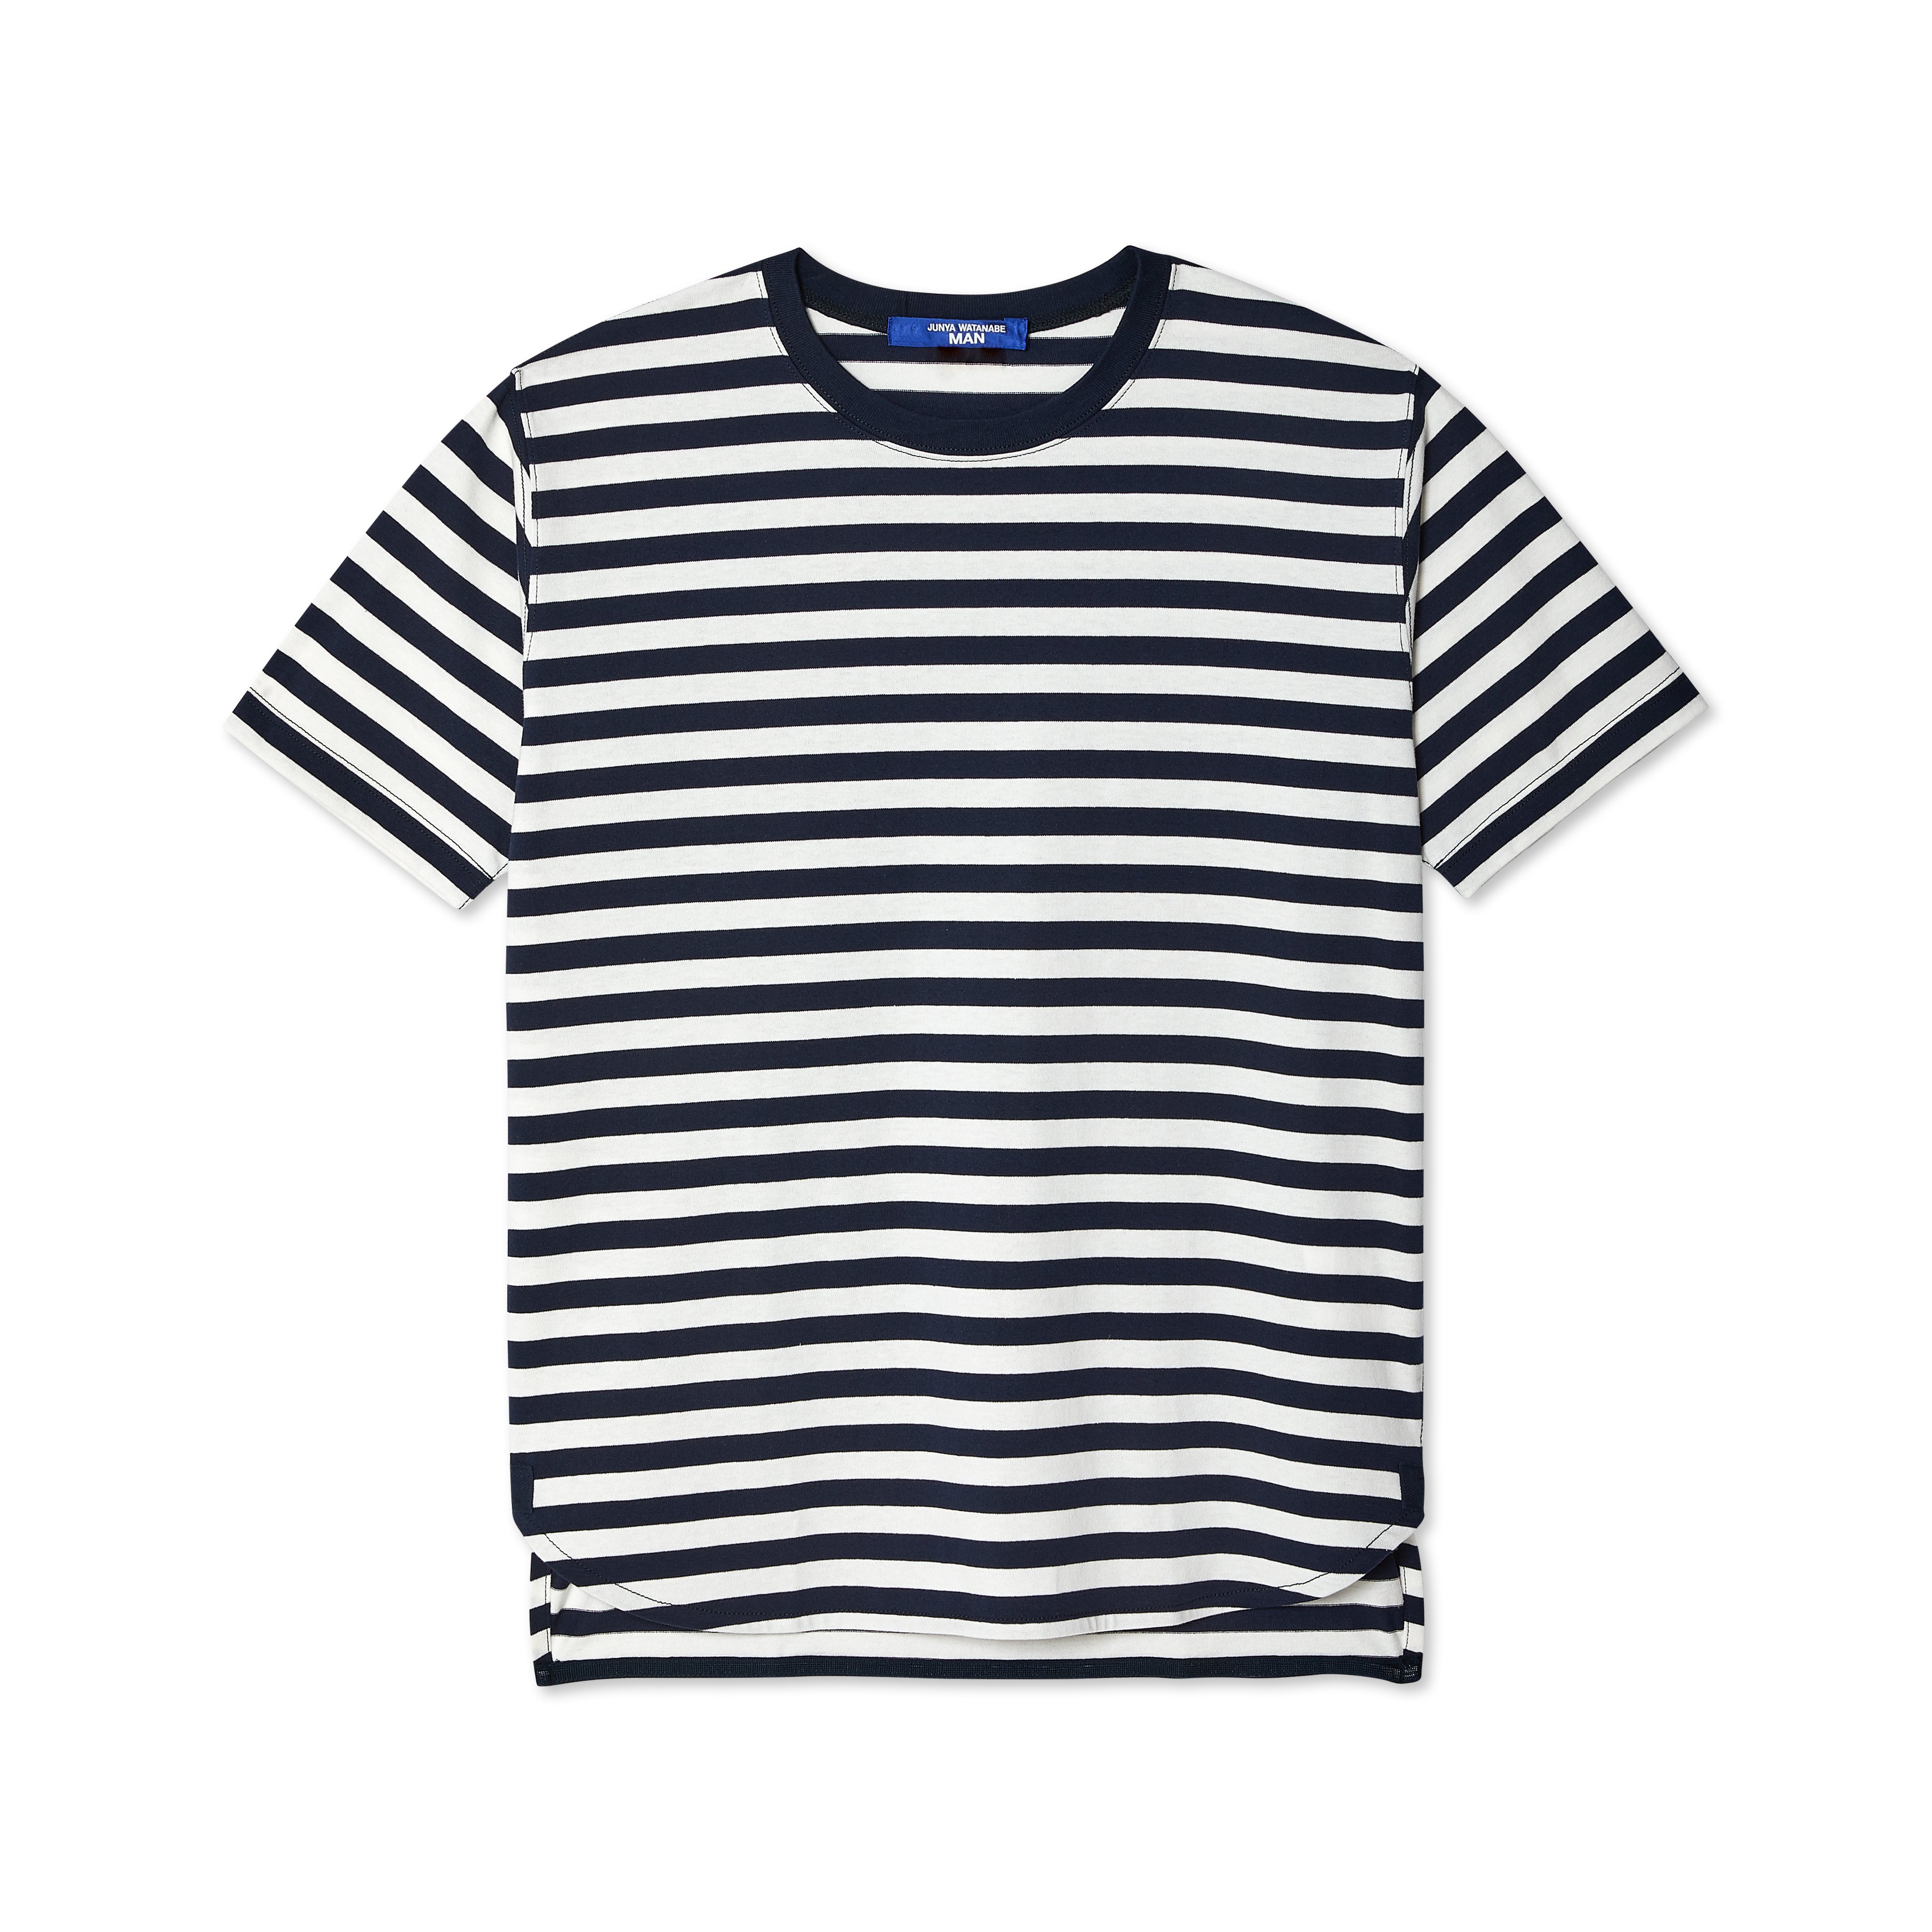 Junya Watanabe Man - Striped Tee - (Navy/White) – DSMNY E-SHOP